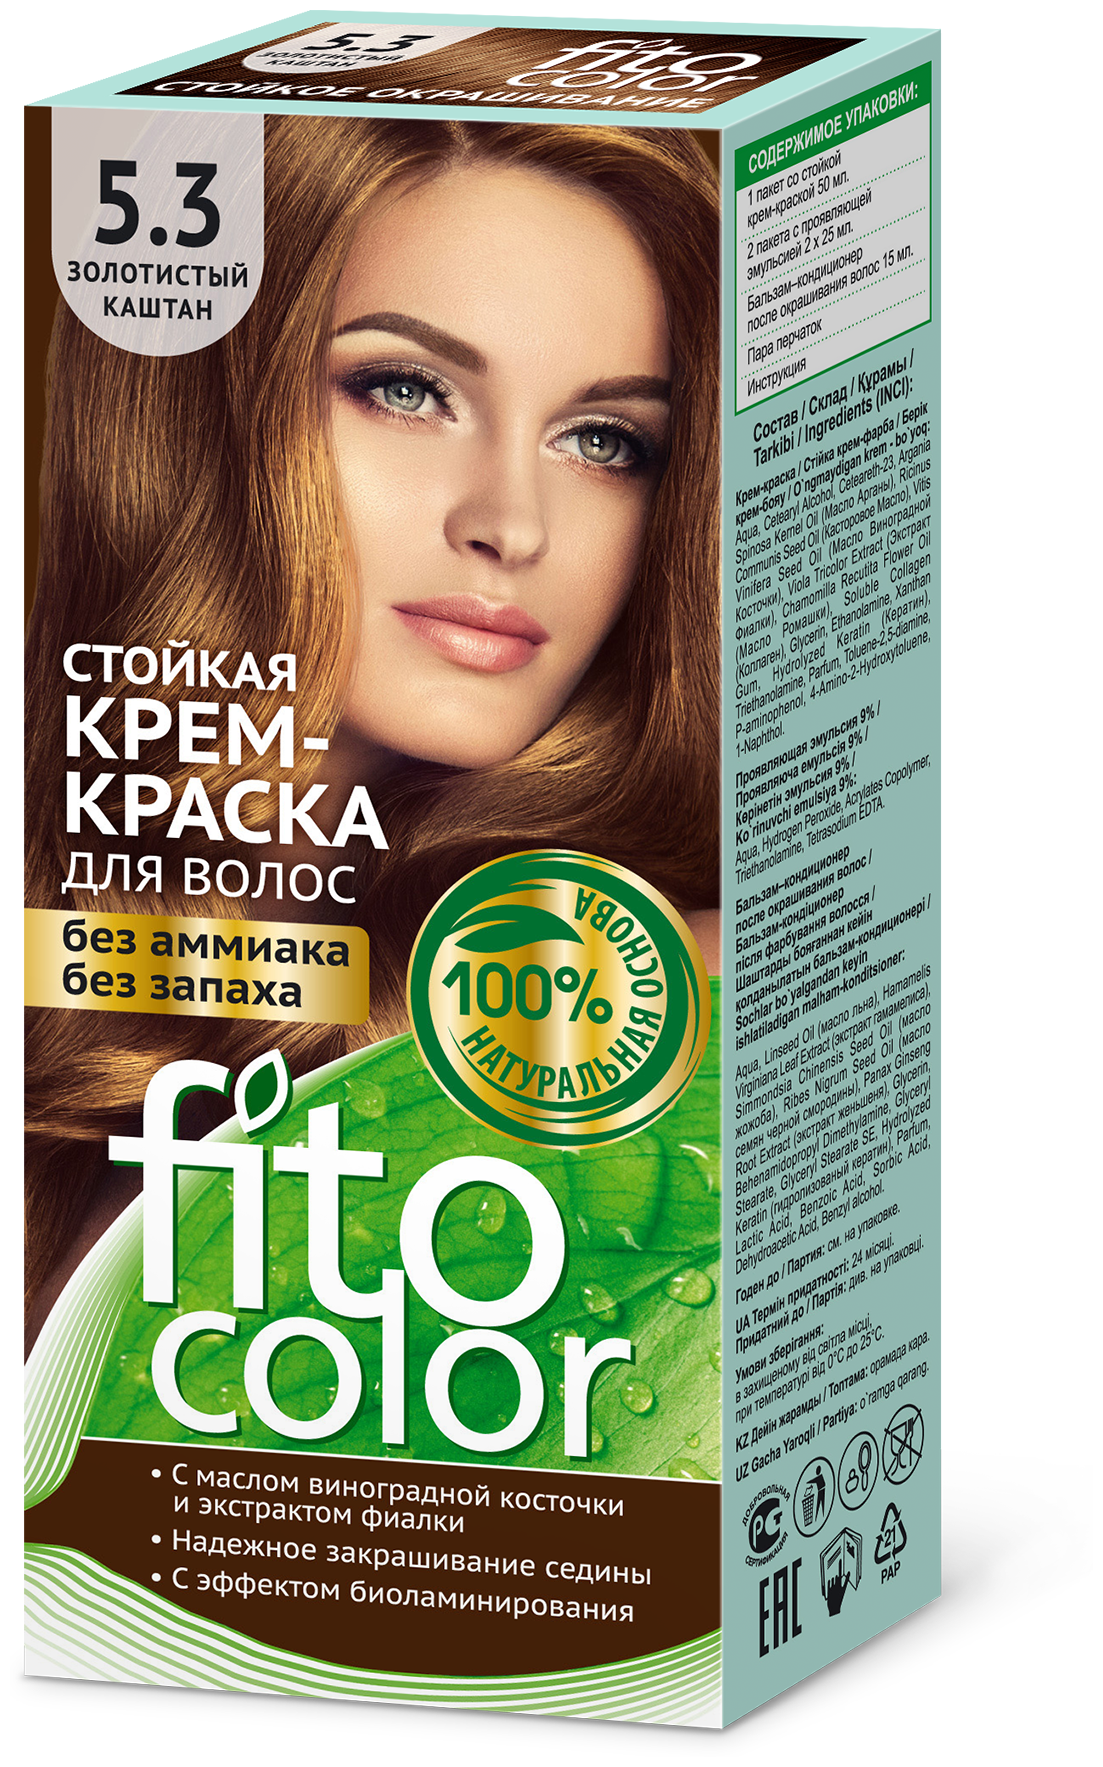 Fito косметик Fitocolor стойкая крем-краска для волос 115 мл